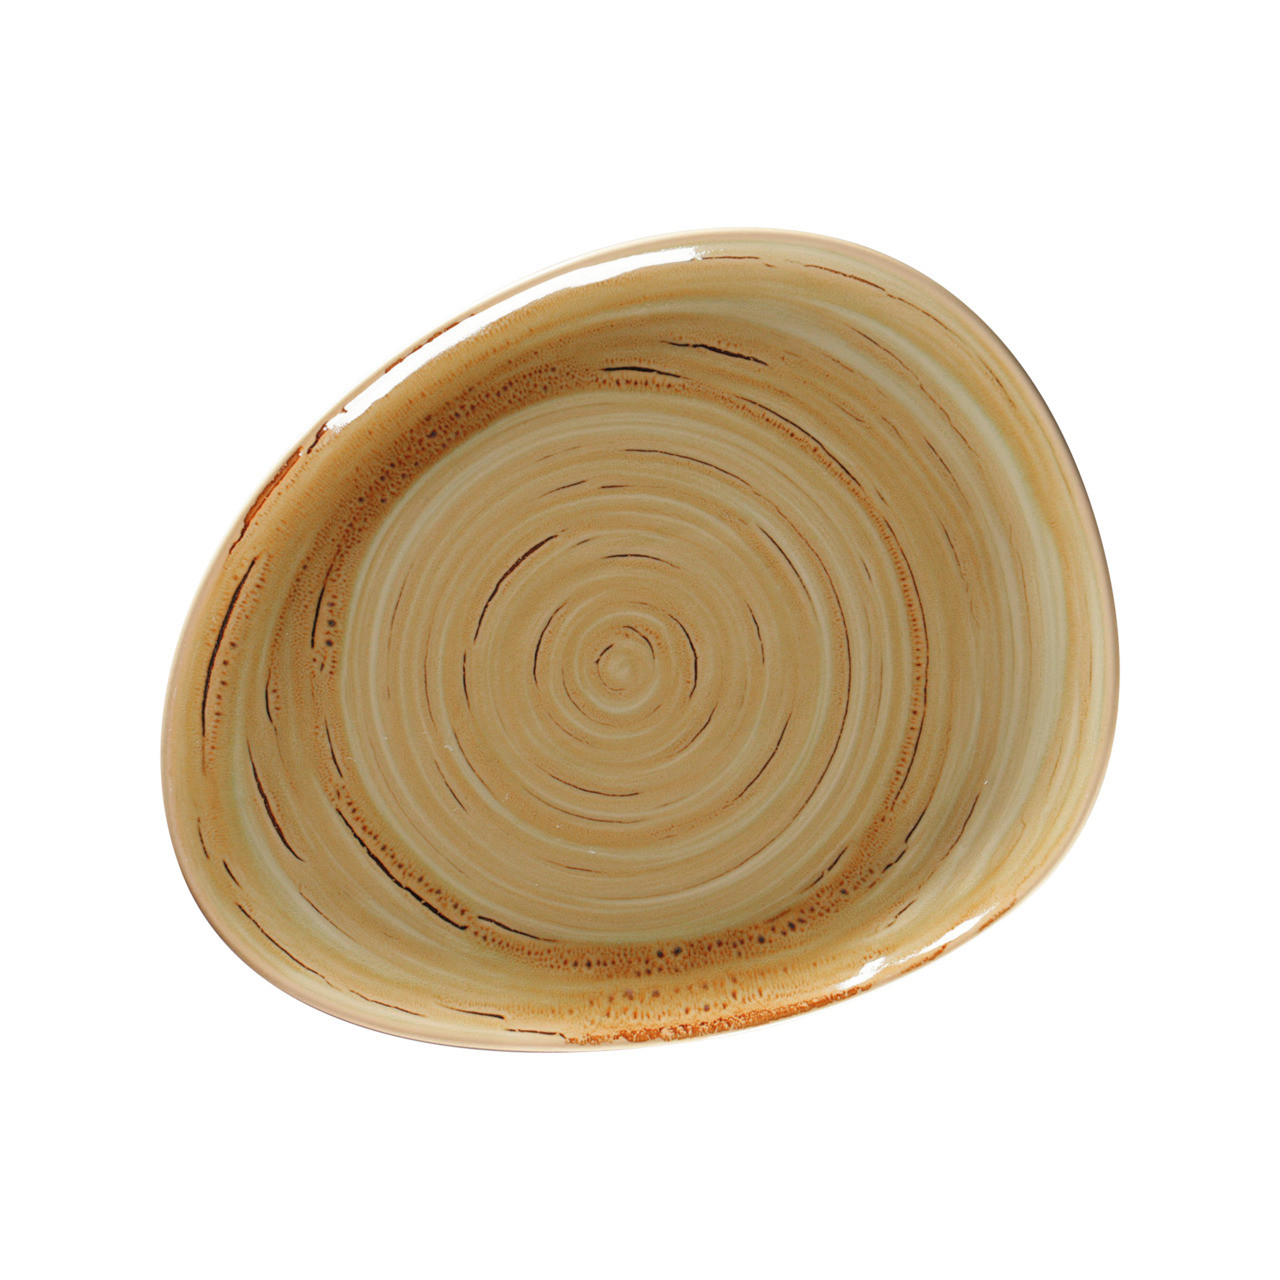 Spot, Teller flach organisch 279 x 224 mm garnet beige